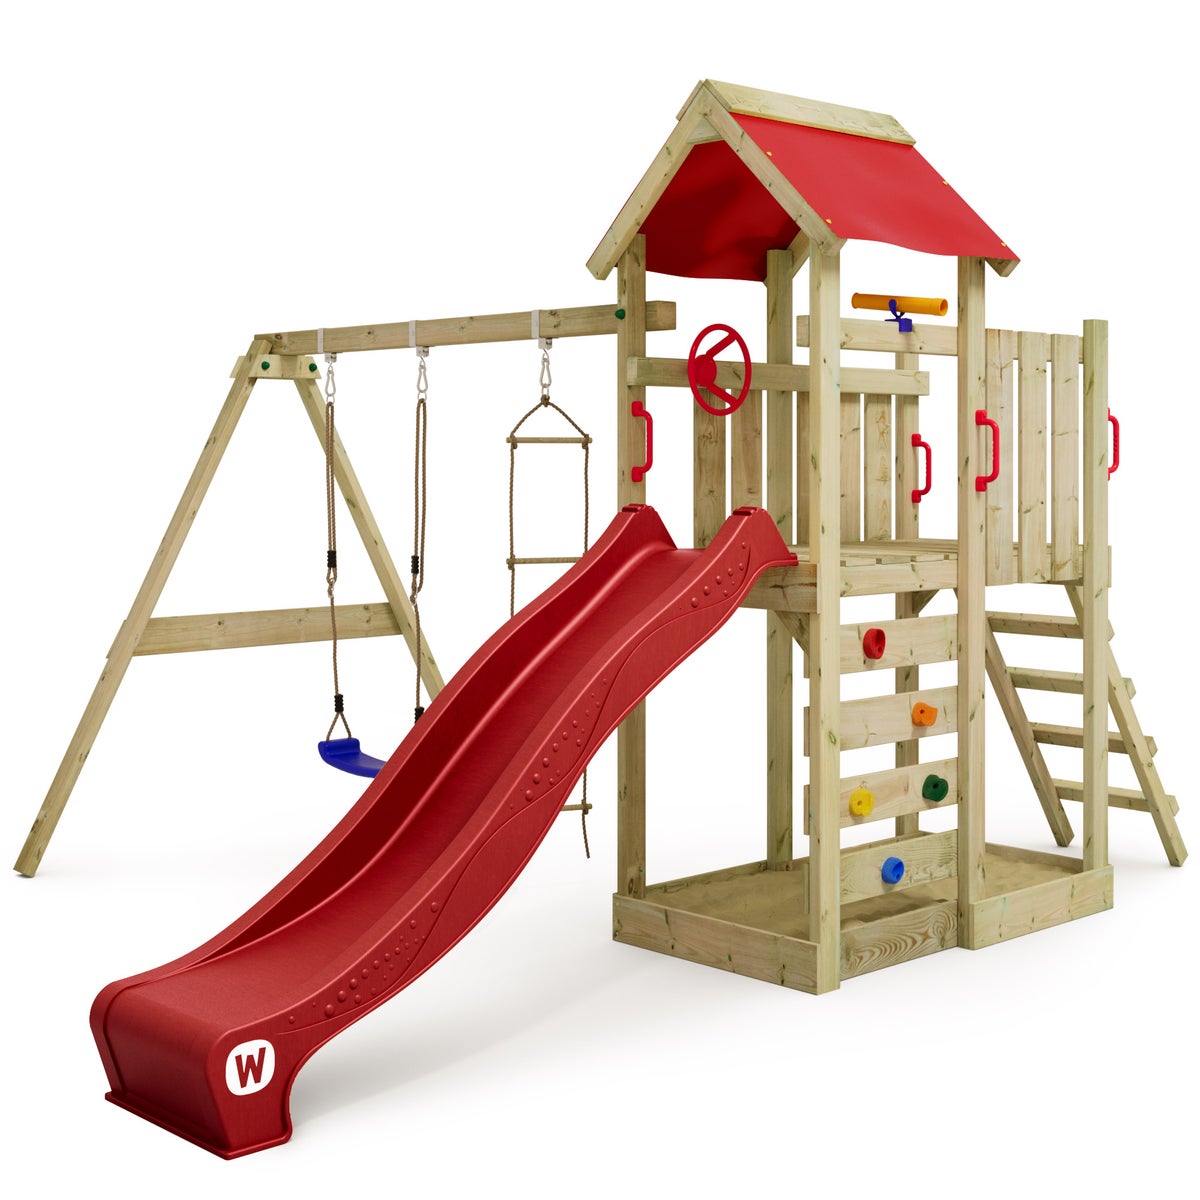 WICKEY Spielturm Klettergerüst MultiFlyer mit Schaukel und Rutsche, Kletterturm mit Sandkasten, Leiter und Spiel-Zubehör - rot